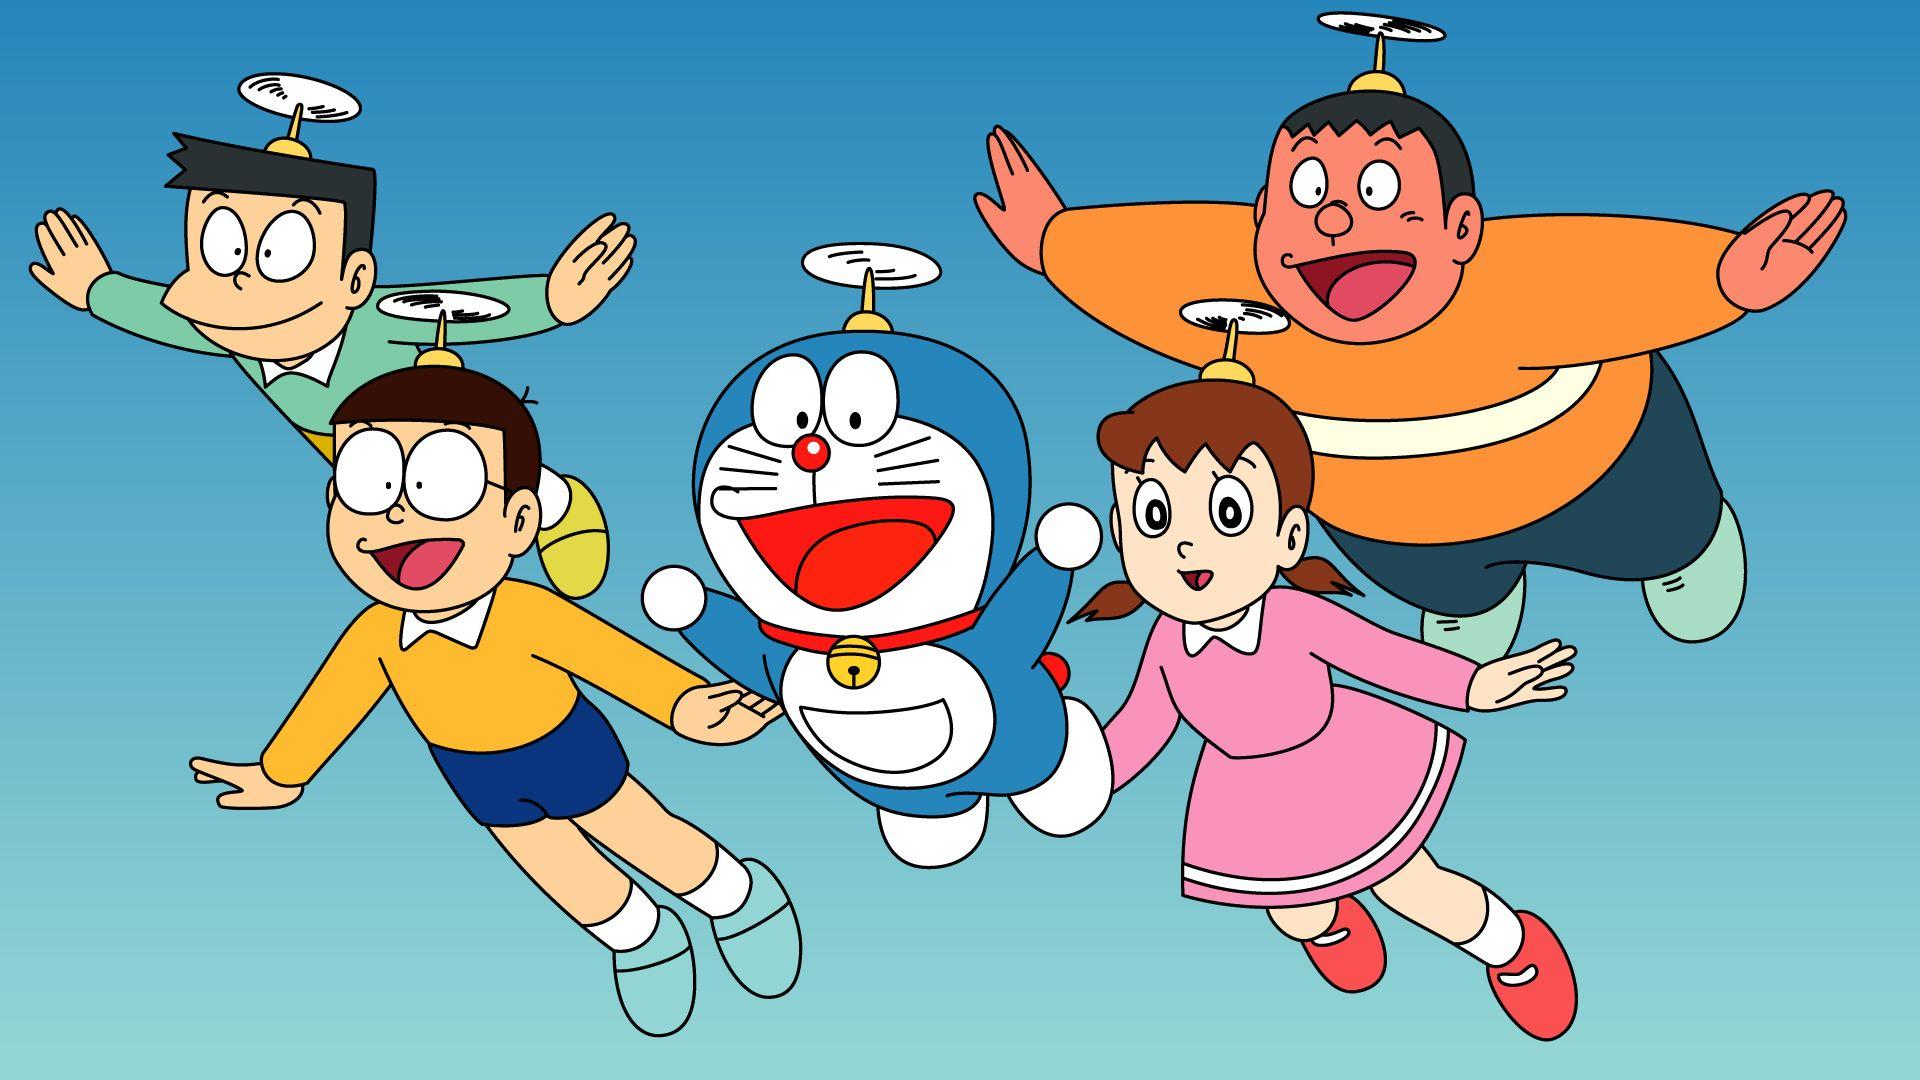 Trang trí màn hình máy tính của bạn với hình nền Doraemon đầy màu sắc và vui nhộn! Cùng trang trí không gian làm việc thêm sinh động, đầy ắp niềm vui và phong cách. Tại Wallpaper Cave, bạn sẽ tìm thấy hàng ngàn hình nền Doraemon độc đáo và đẹp mắt để lựa chọn.